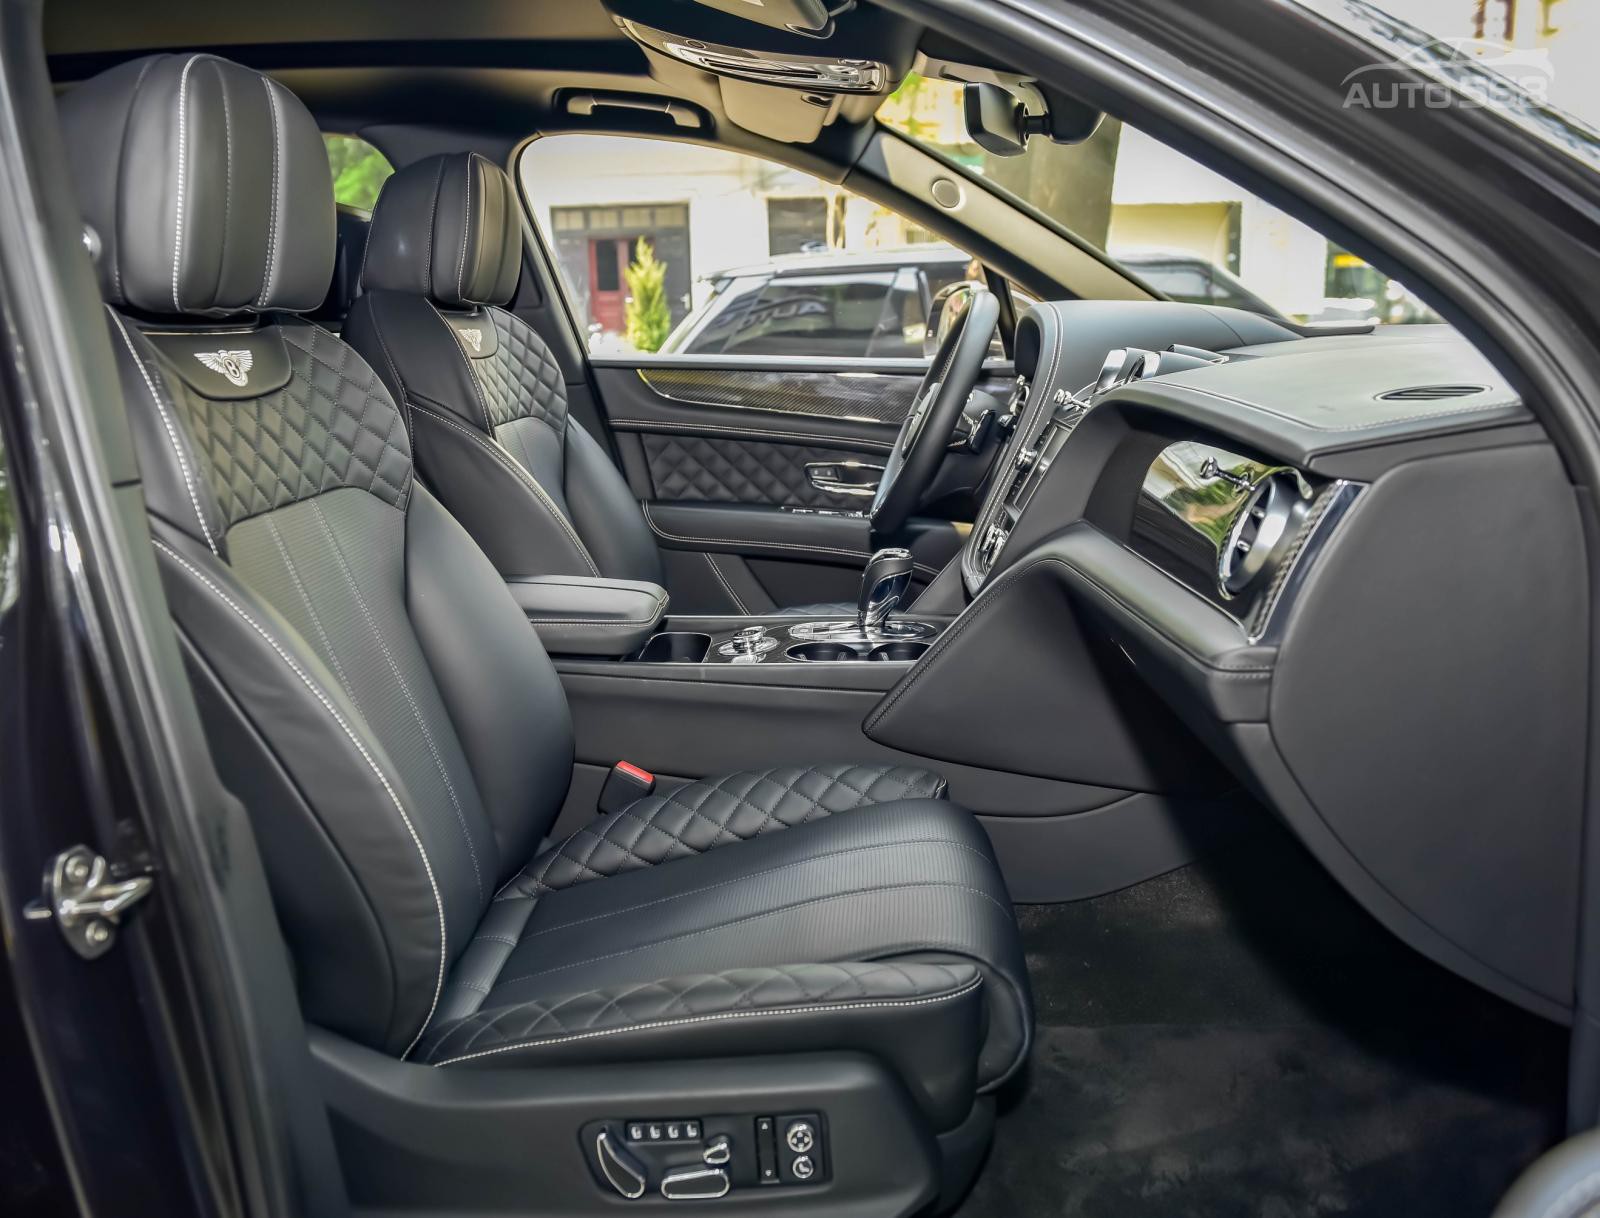 Bán Xe Bentley Bentayga Mulliner V8 2019, màu đen 04 ghế VIP, giá tốt